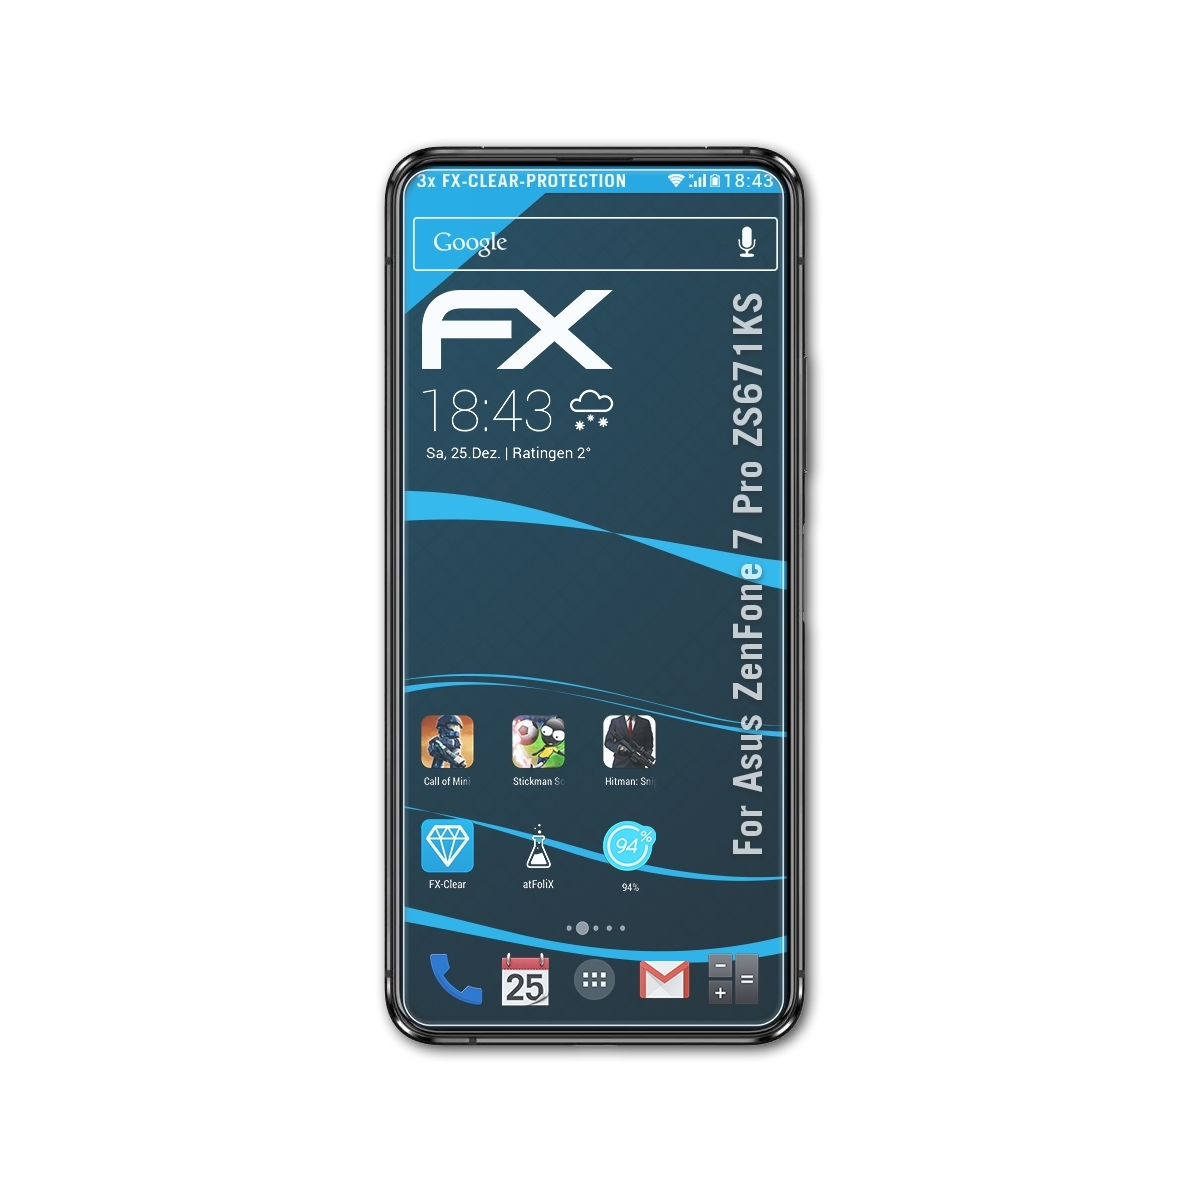 ATFOLIX 3x FX-Clear Displayschutz(für Asus (ZS671KS)) Pro ZenFone 7